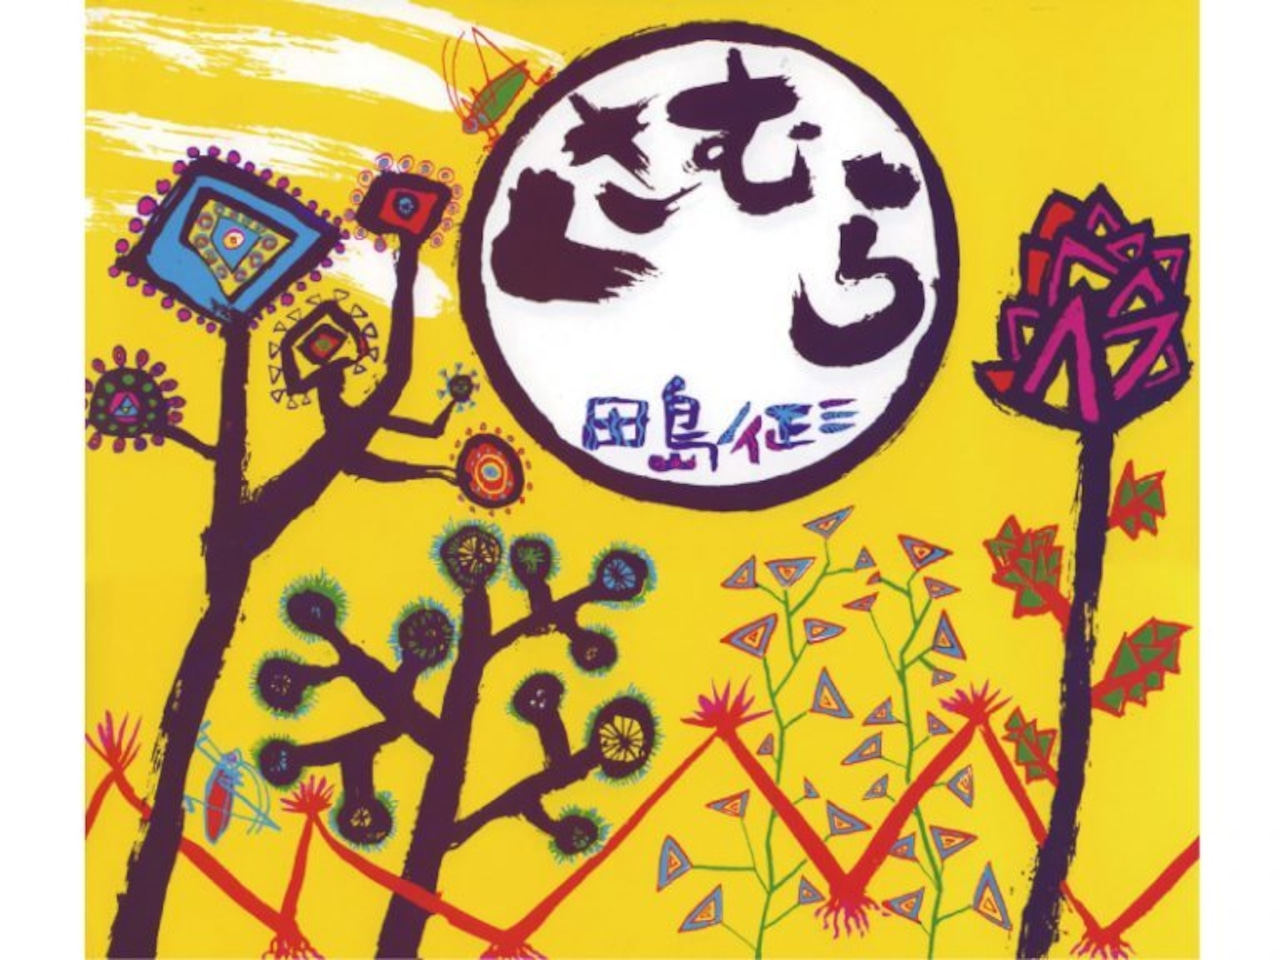 田島征三 シルクスクリーン「地を這う草にも花が咲く」/ Tashima Seizo Screen painting (Flowers broom even in the grass crawling on the ground)